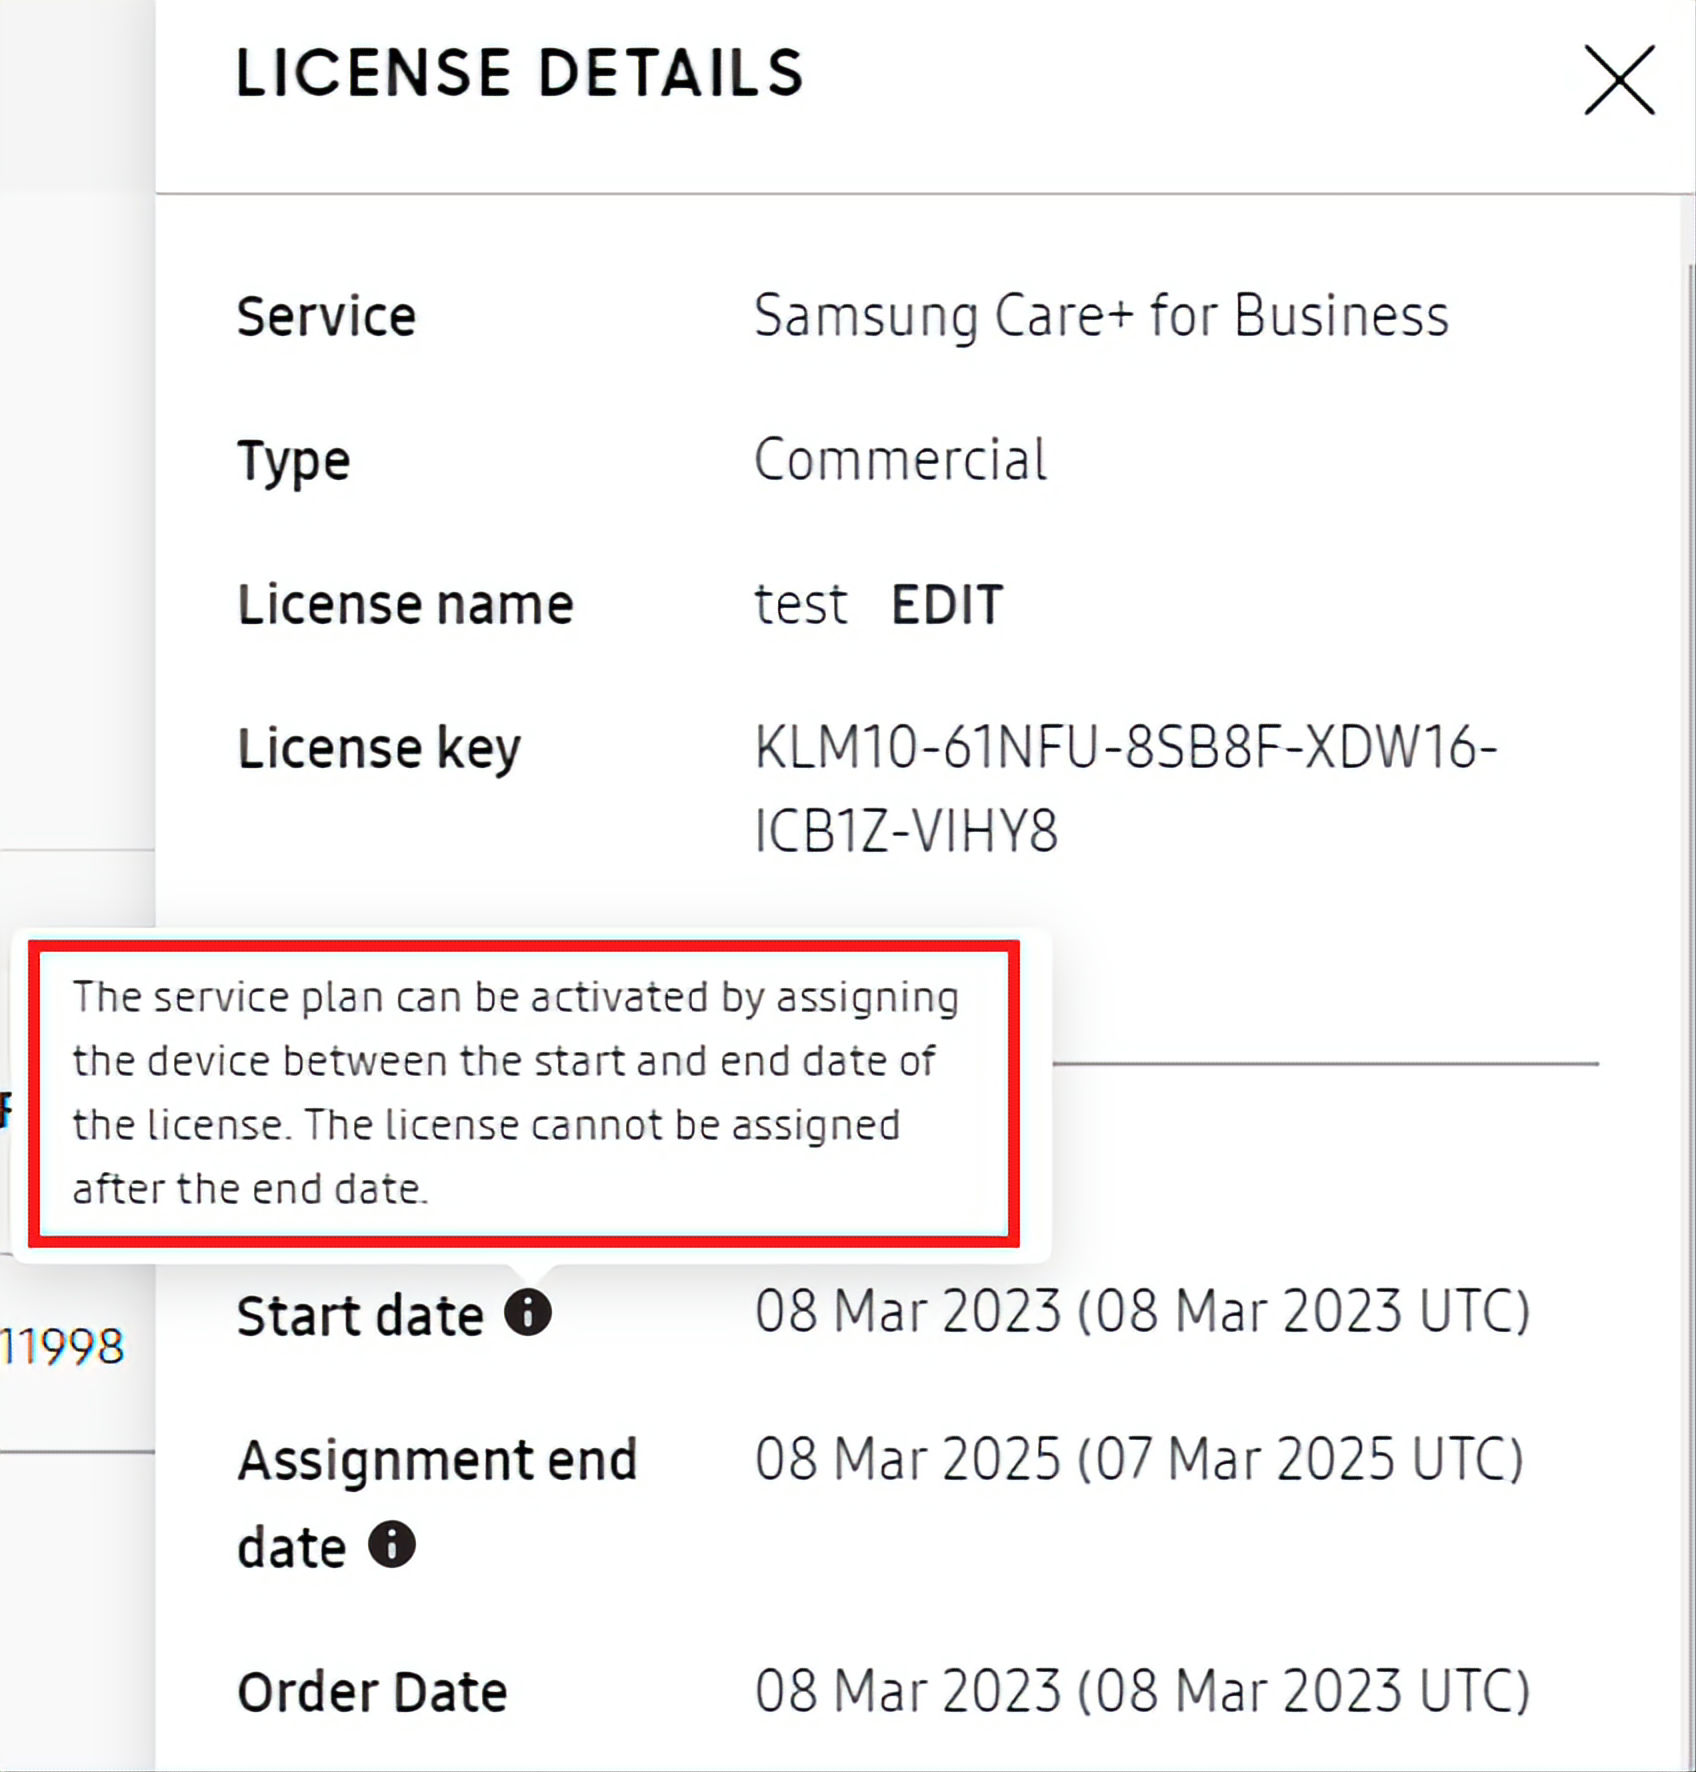 License Details pane highligting tooltip